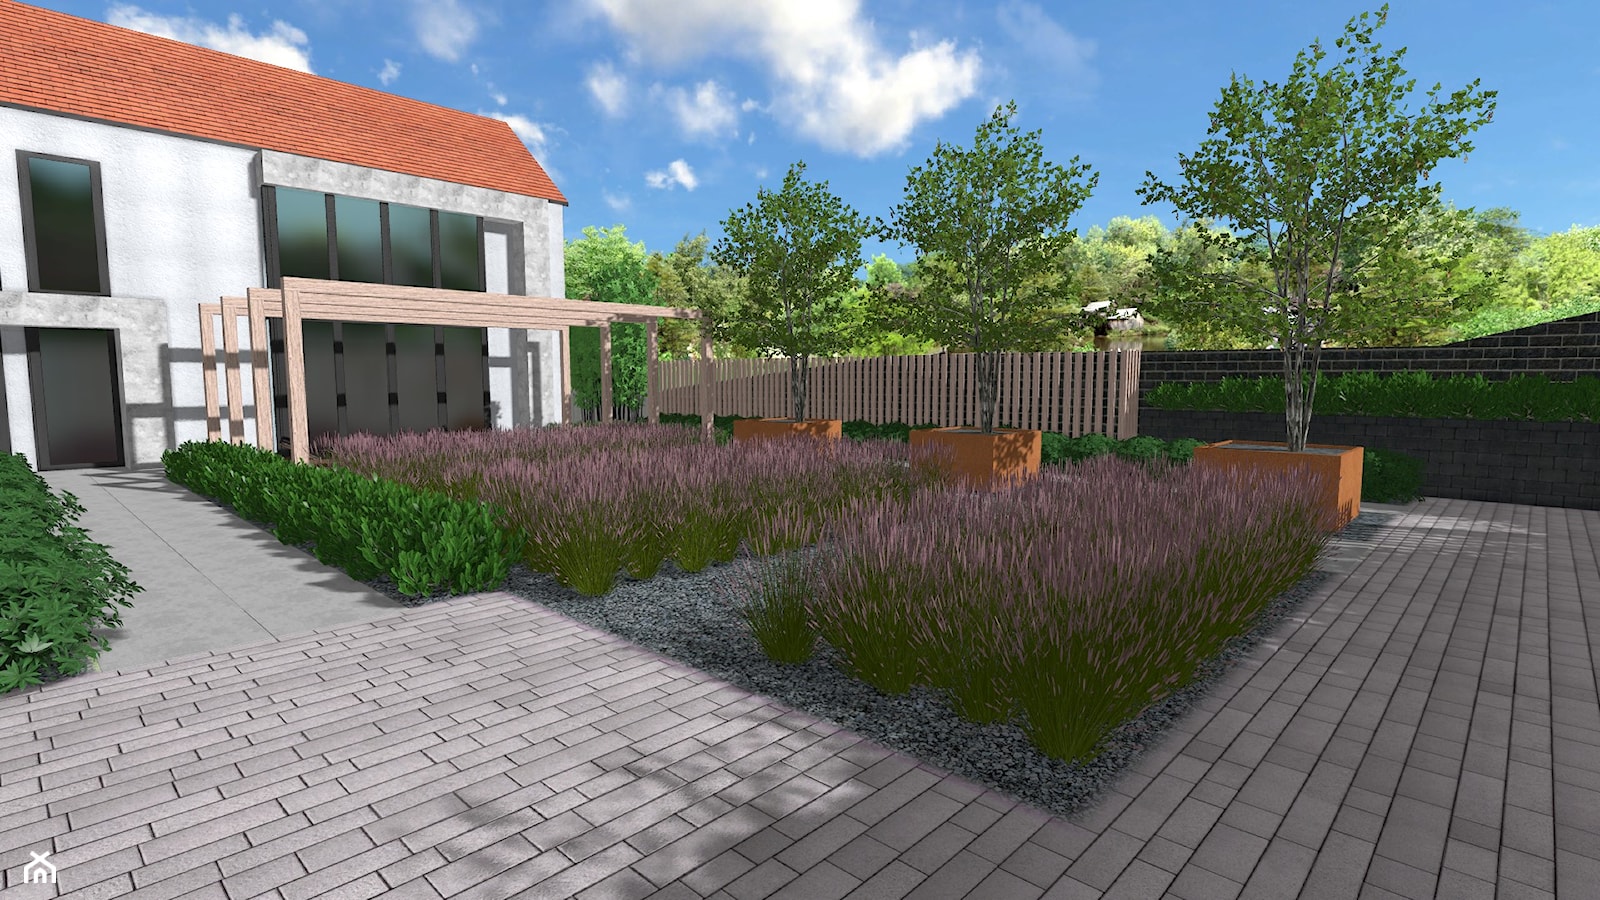 Minimalistyczny ogród traw - Ogród, styl minimalistyczny - zdjęcie od Rock&Flower studio - Homebook